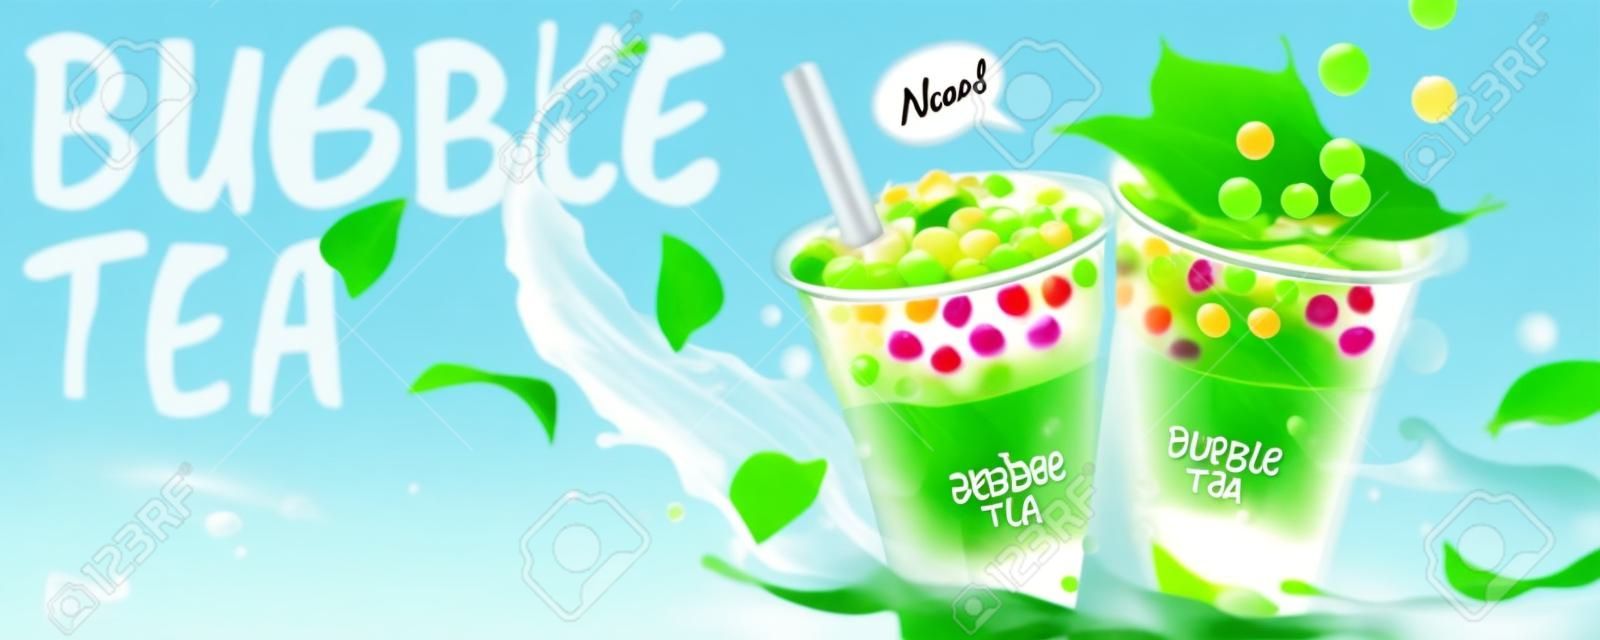 Banery reklamowe herbaty bąbelkowej z rozpryskiwanym mlekiem i zielonymi liśćmi, ilustracja 3d